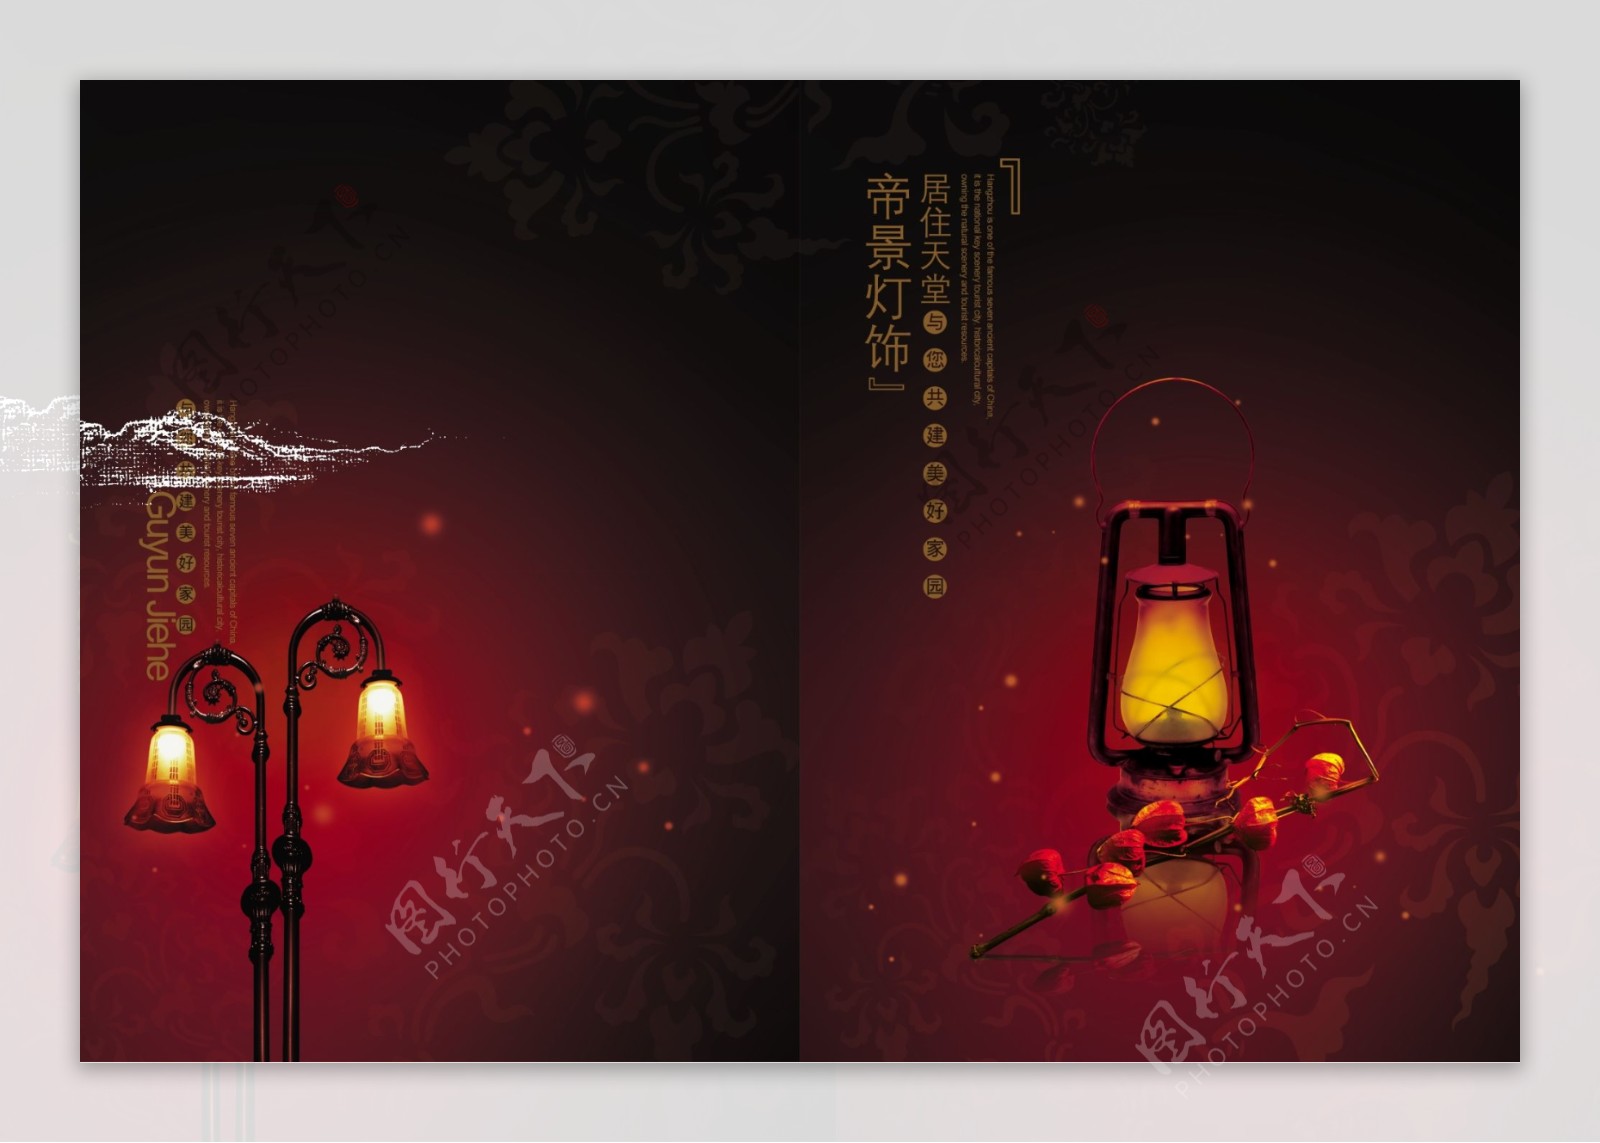 中国风灯饰画册设计PSD分层素材